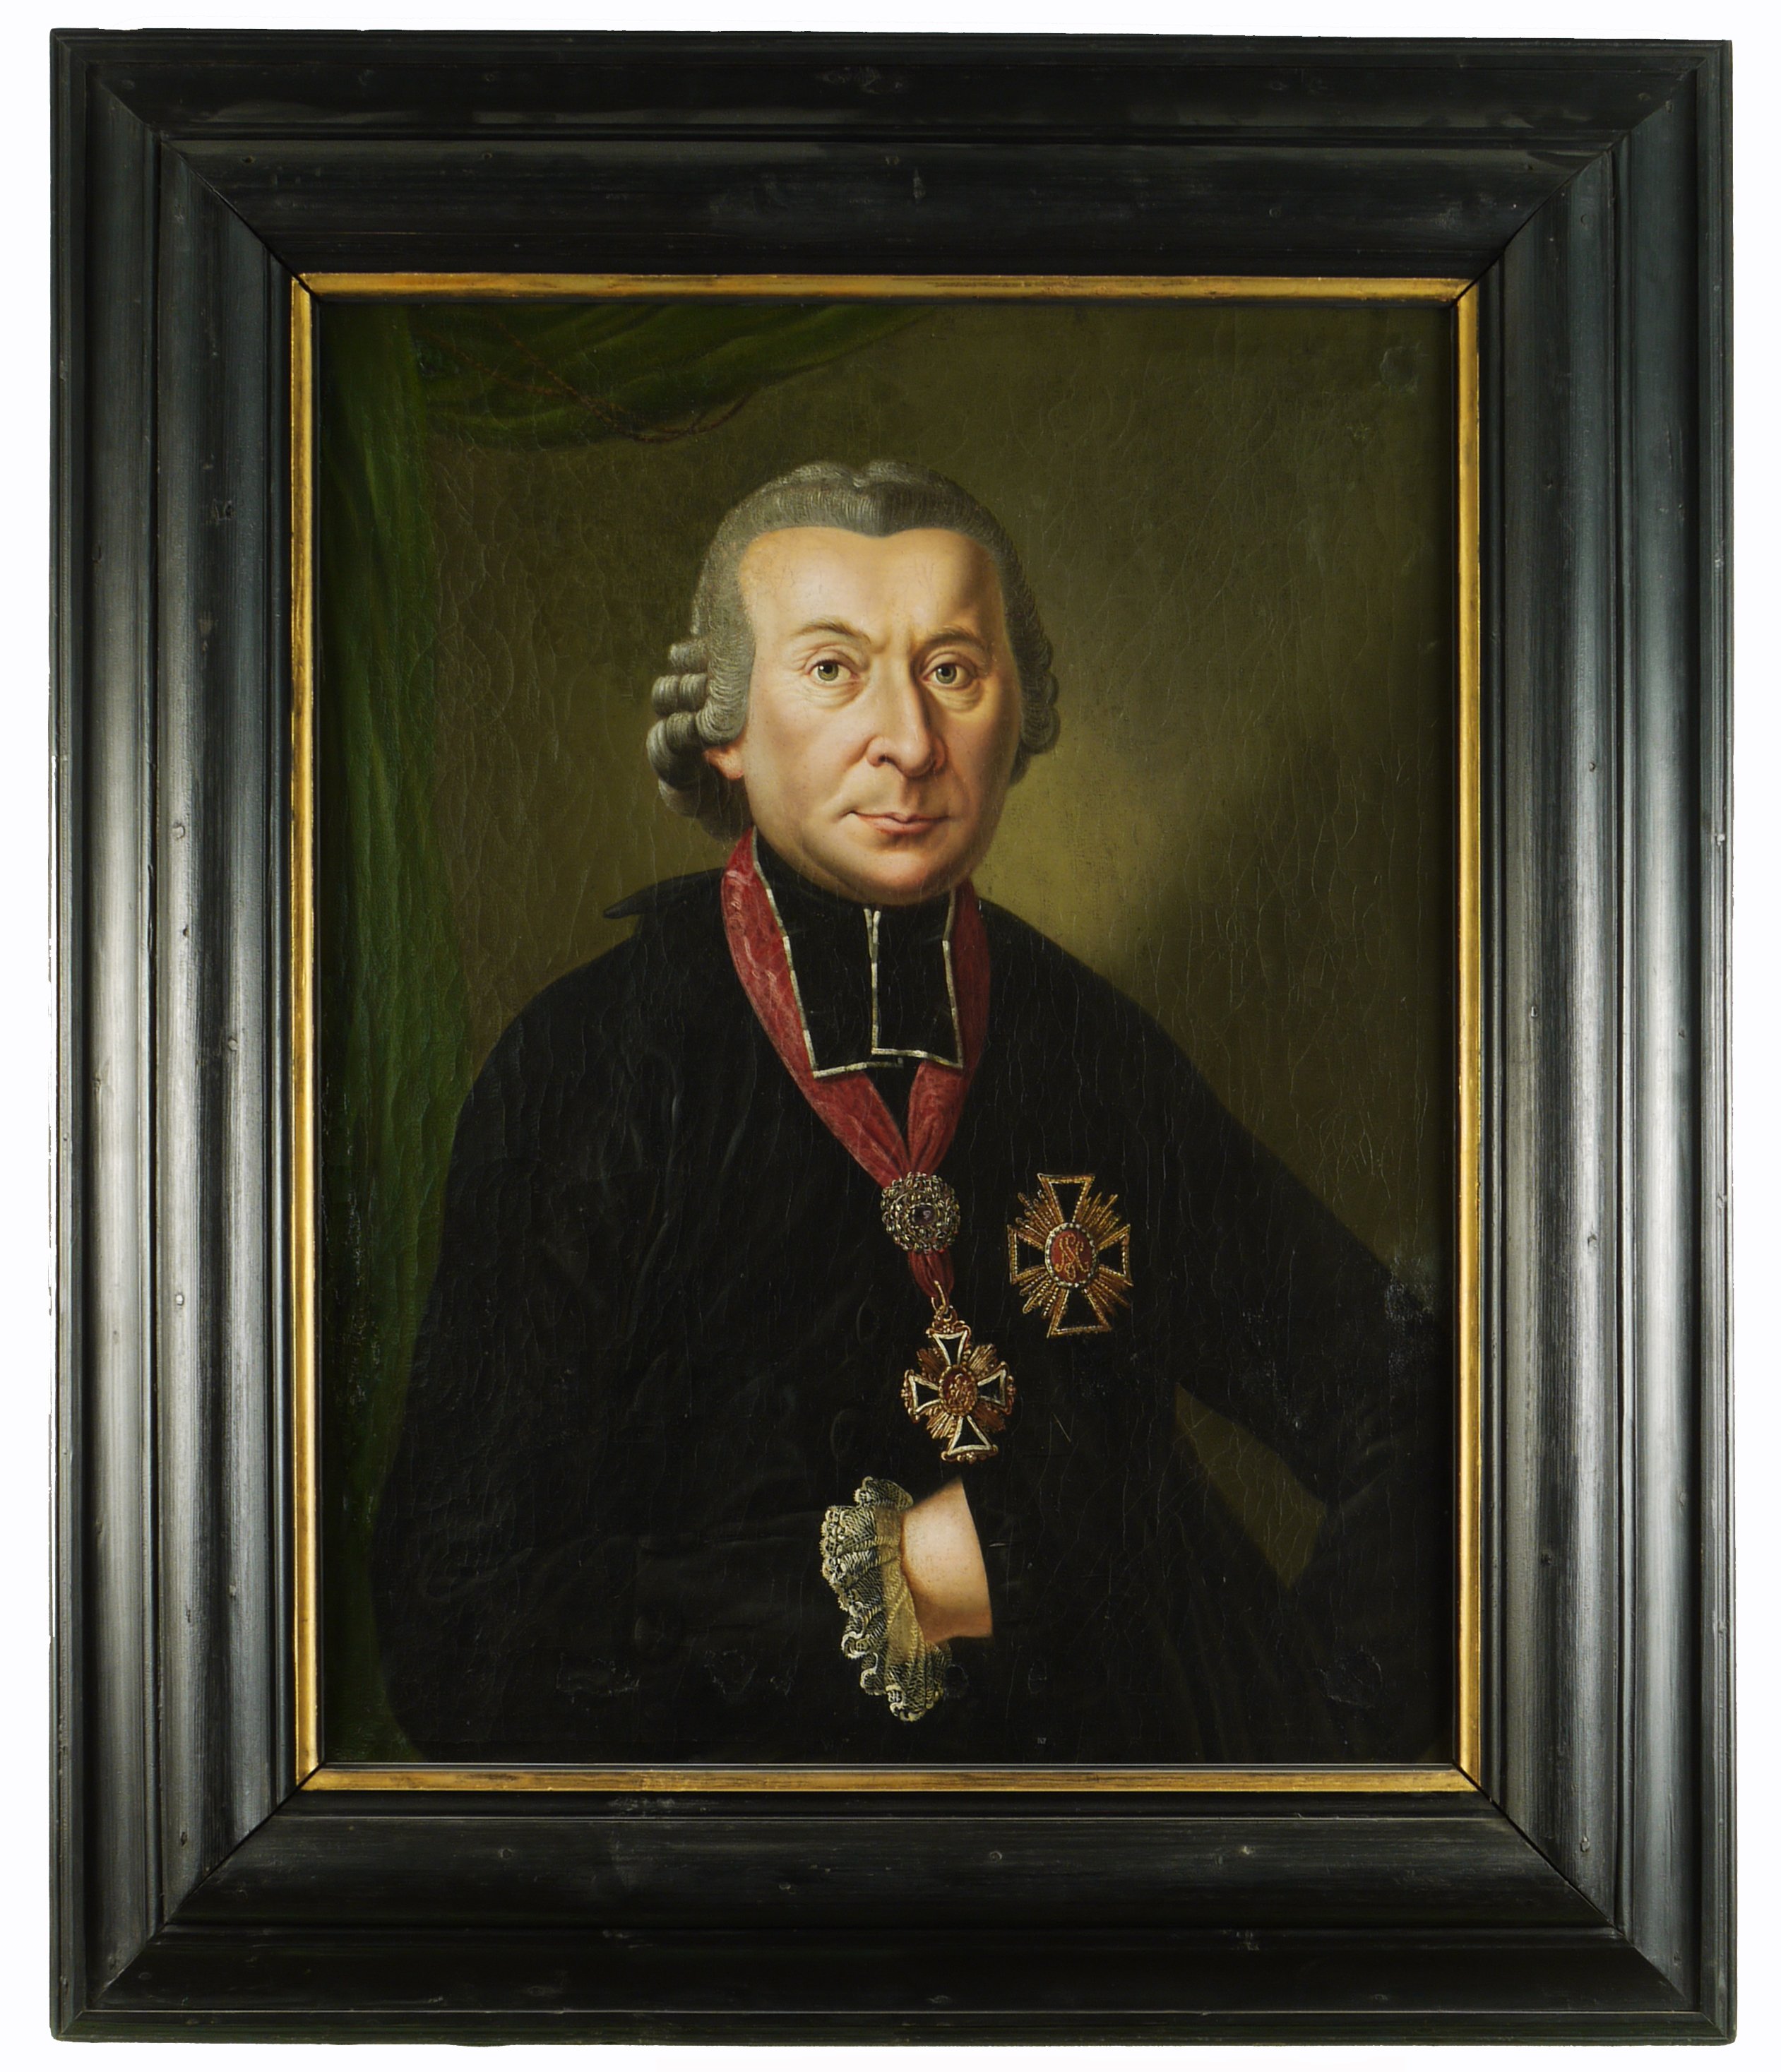 Philipp Franz Wilderich Nepomuk, Graf v. Waldersdorf (1797-1810), Bischof von Speyer (Historisches Museum der Pfalz, Speyer CC BY)